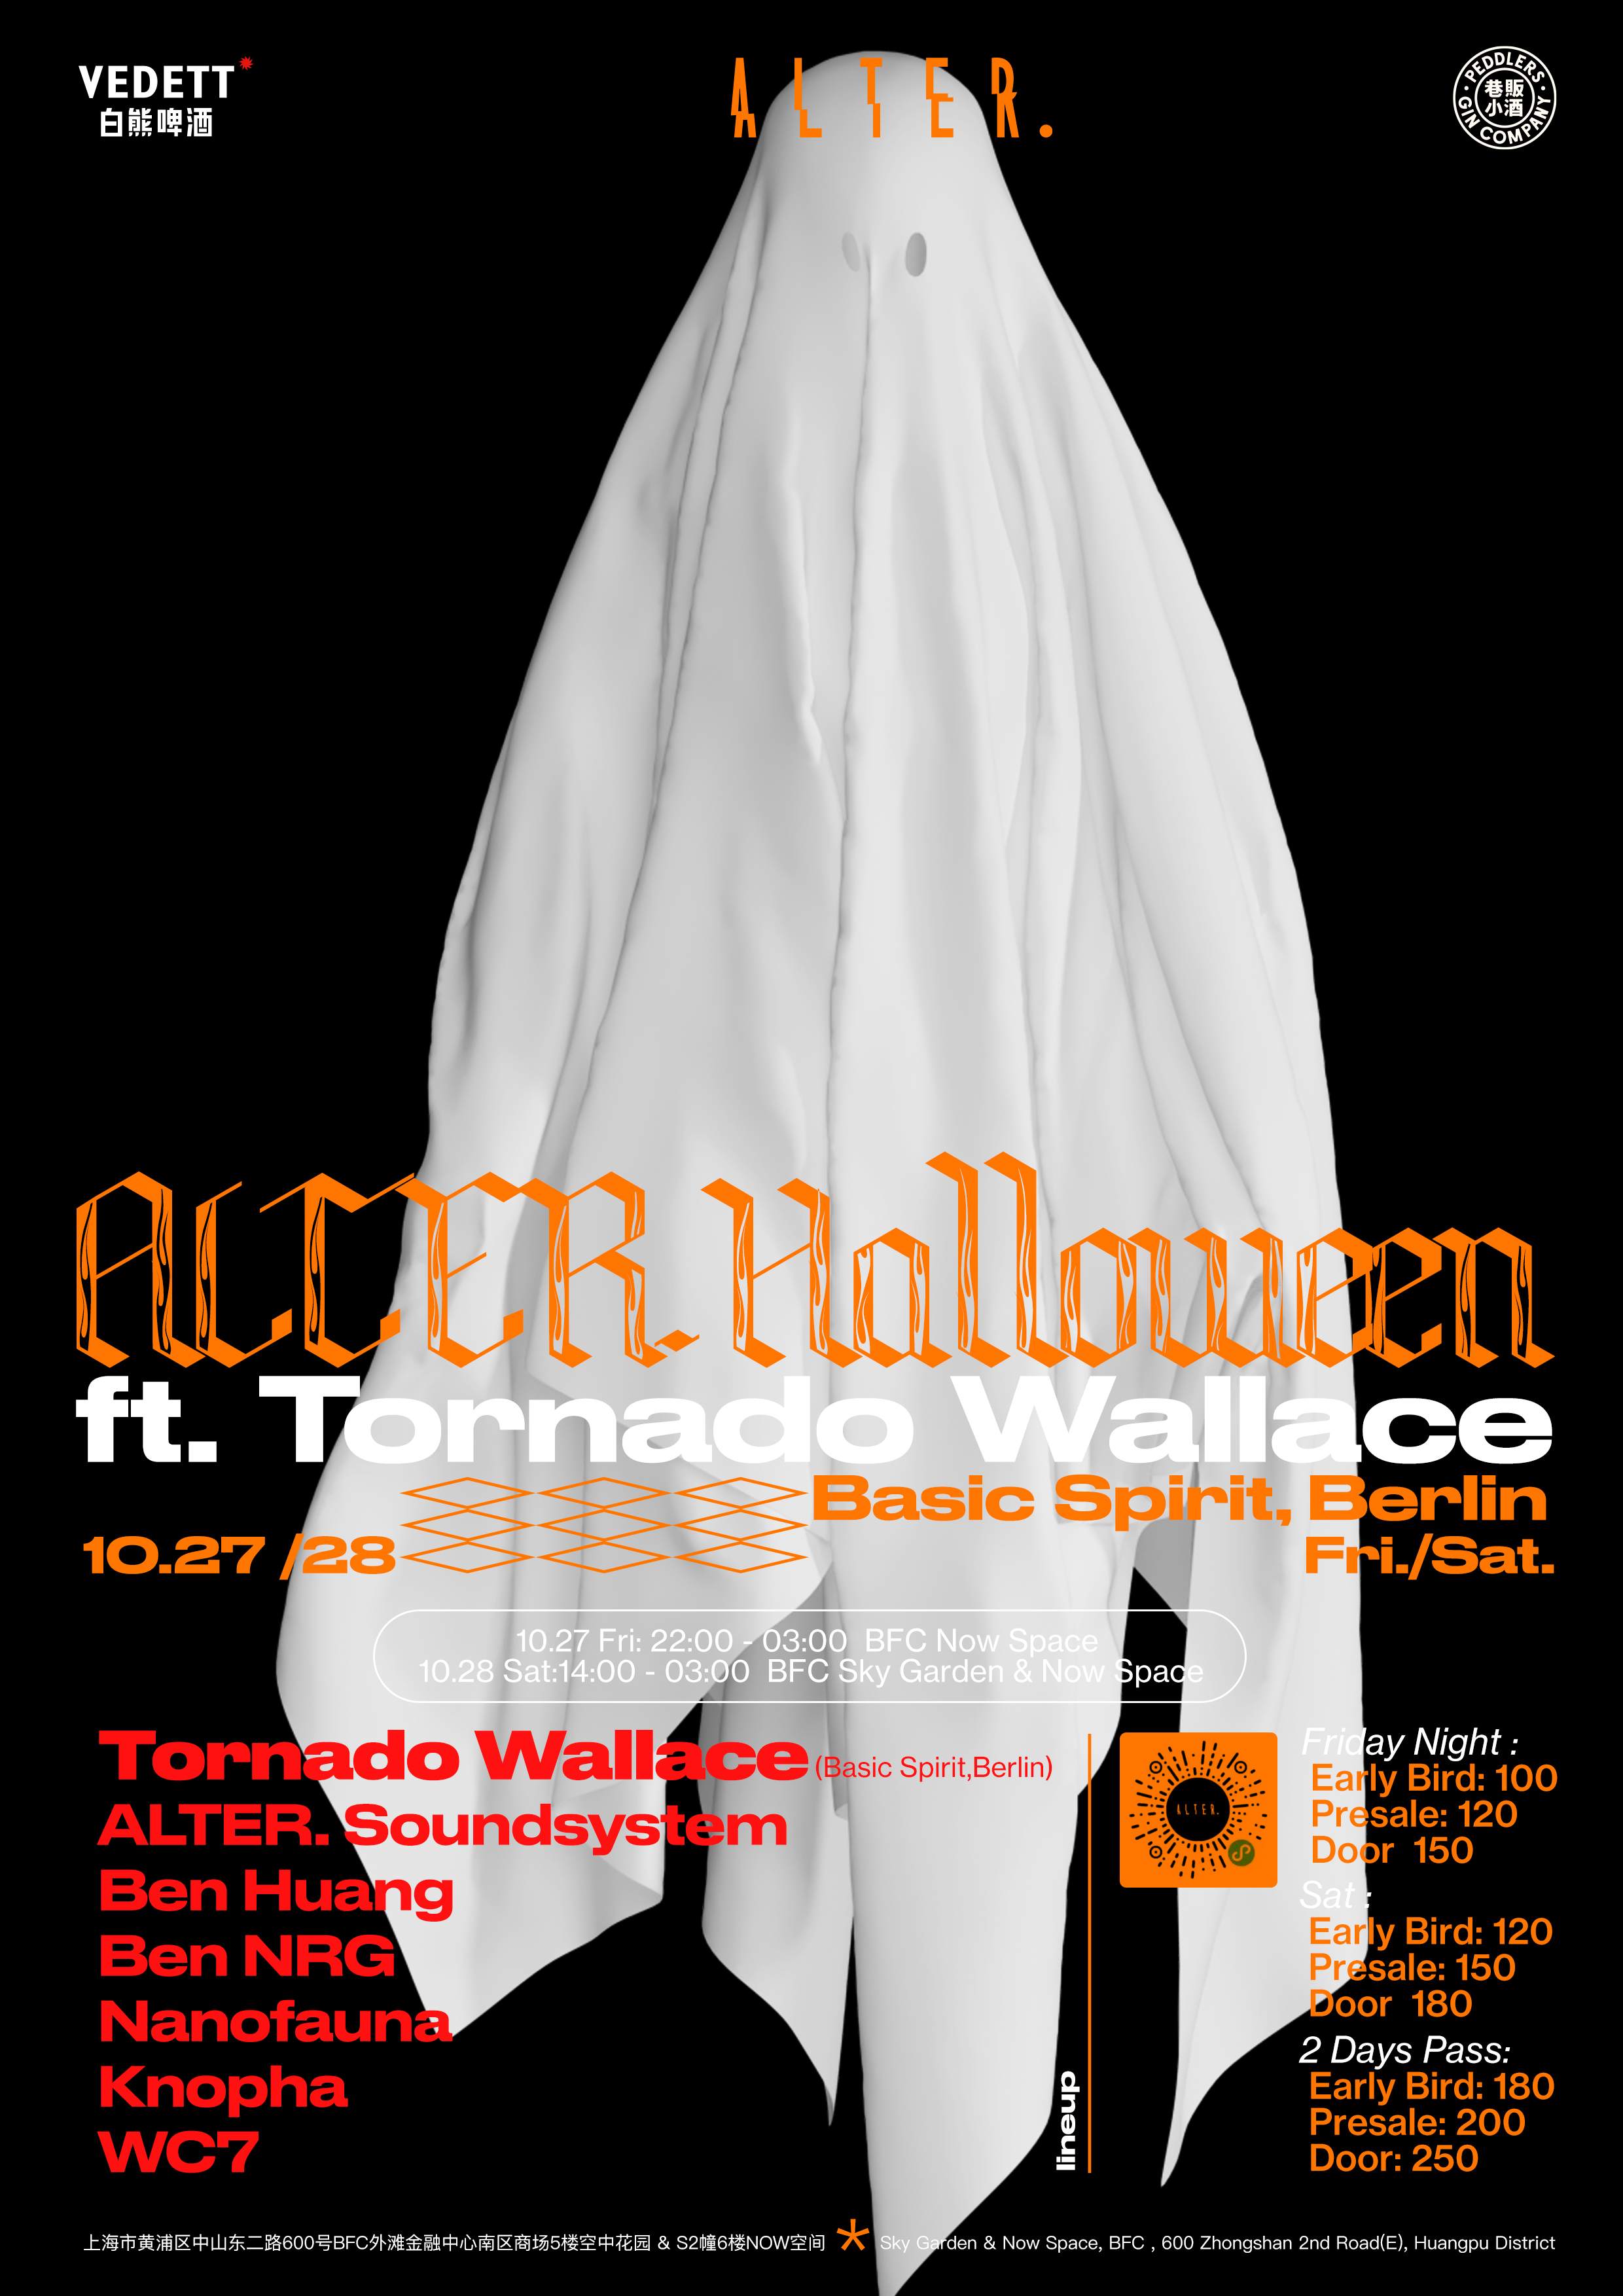 ALTER. Halloween feat. Tornado Wallace (Basic Spirit / Berlin) - フライヤー表